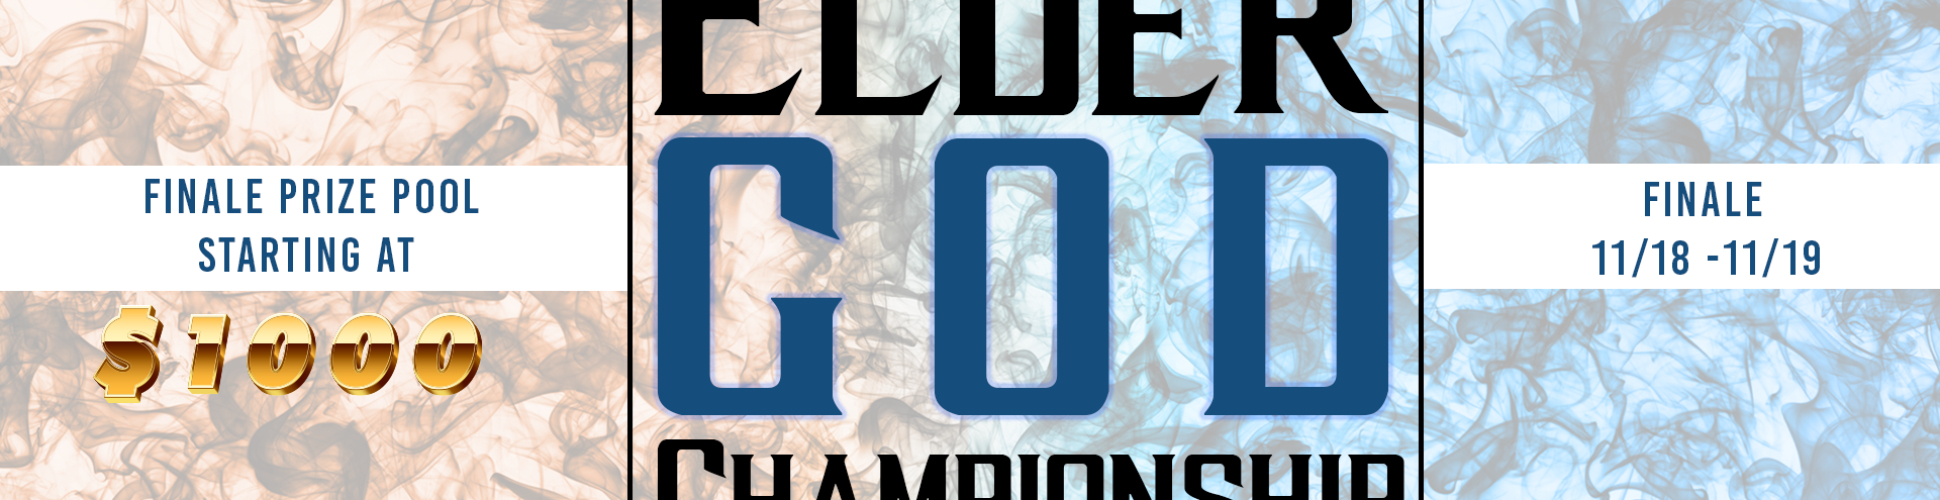 Elder God Championship: Shang Qualifier